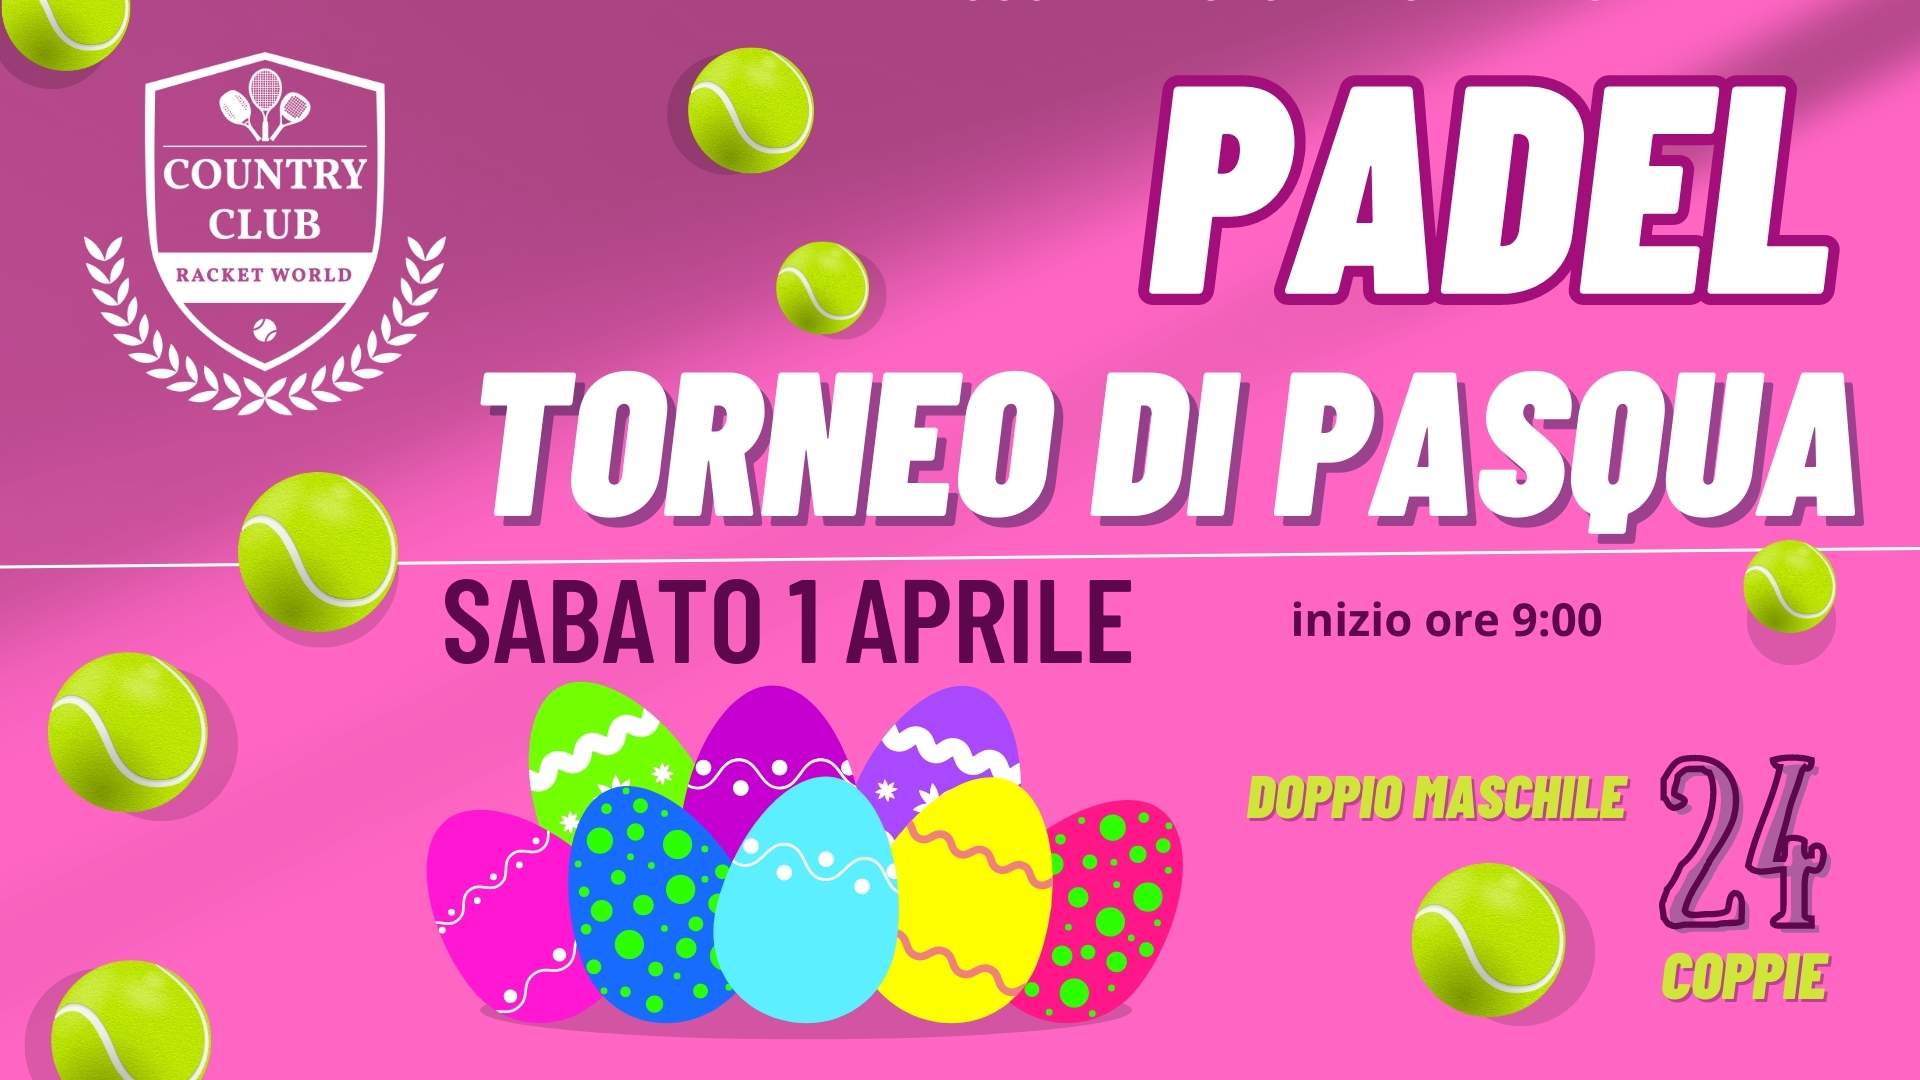 TORNEO PADEL di PASQUA - Country Club Bologna